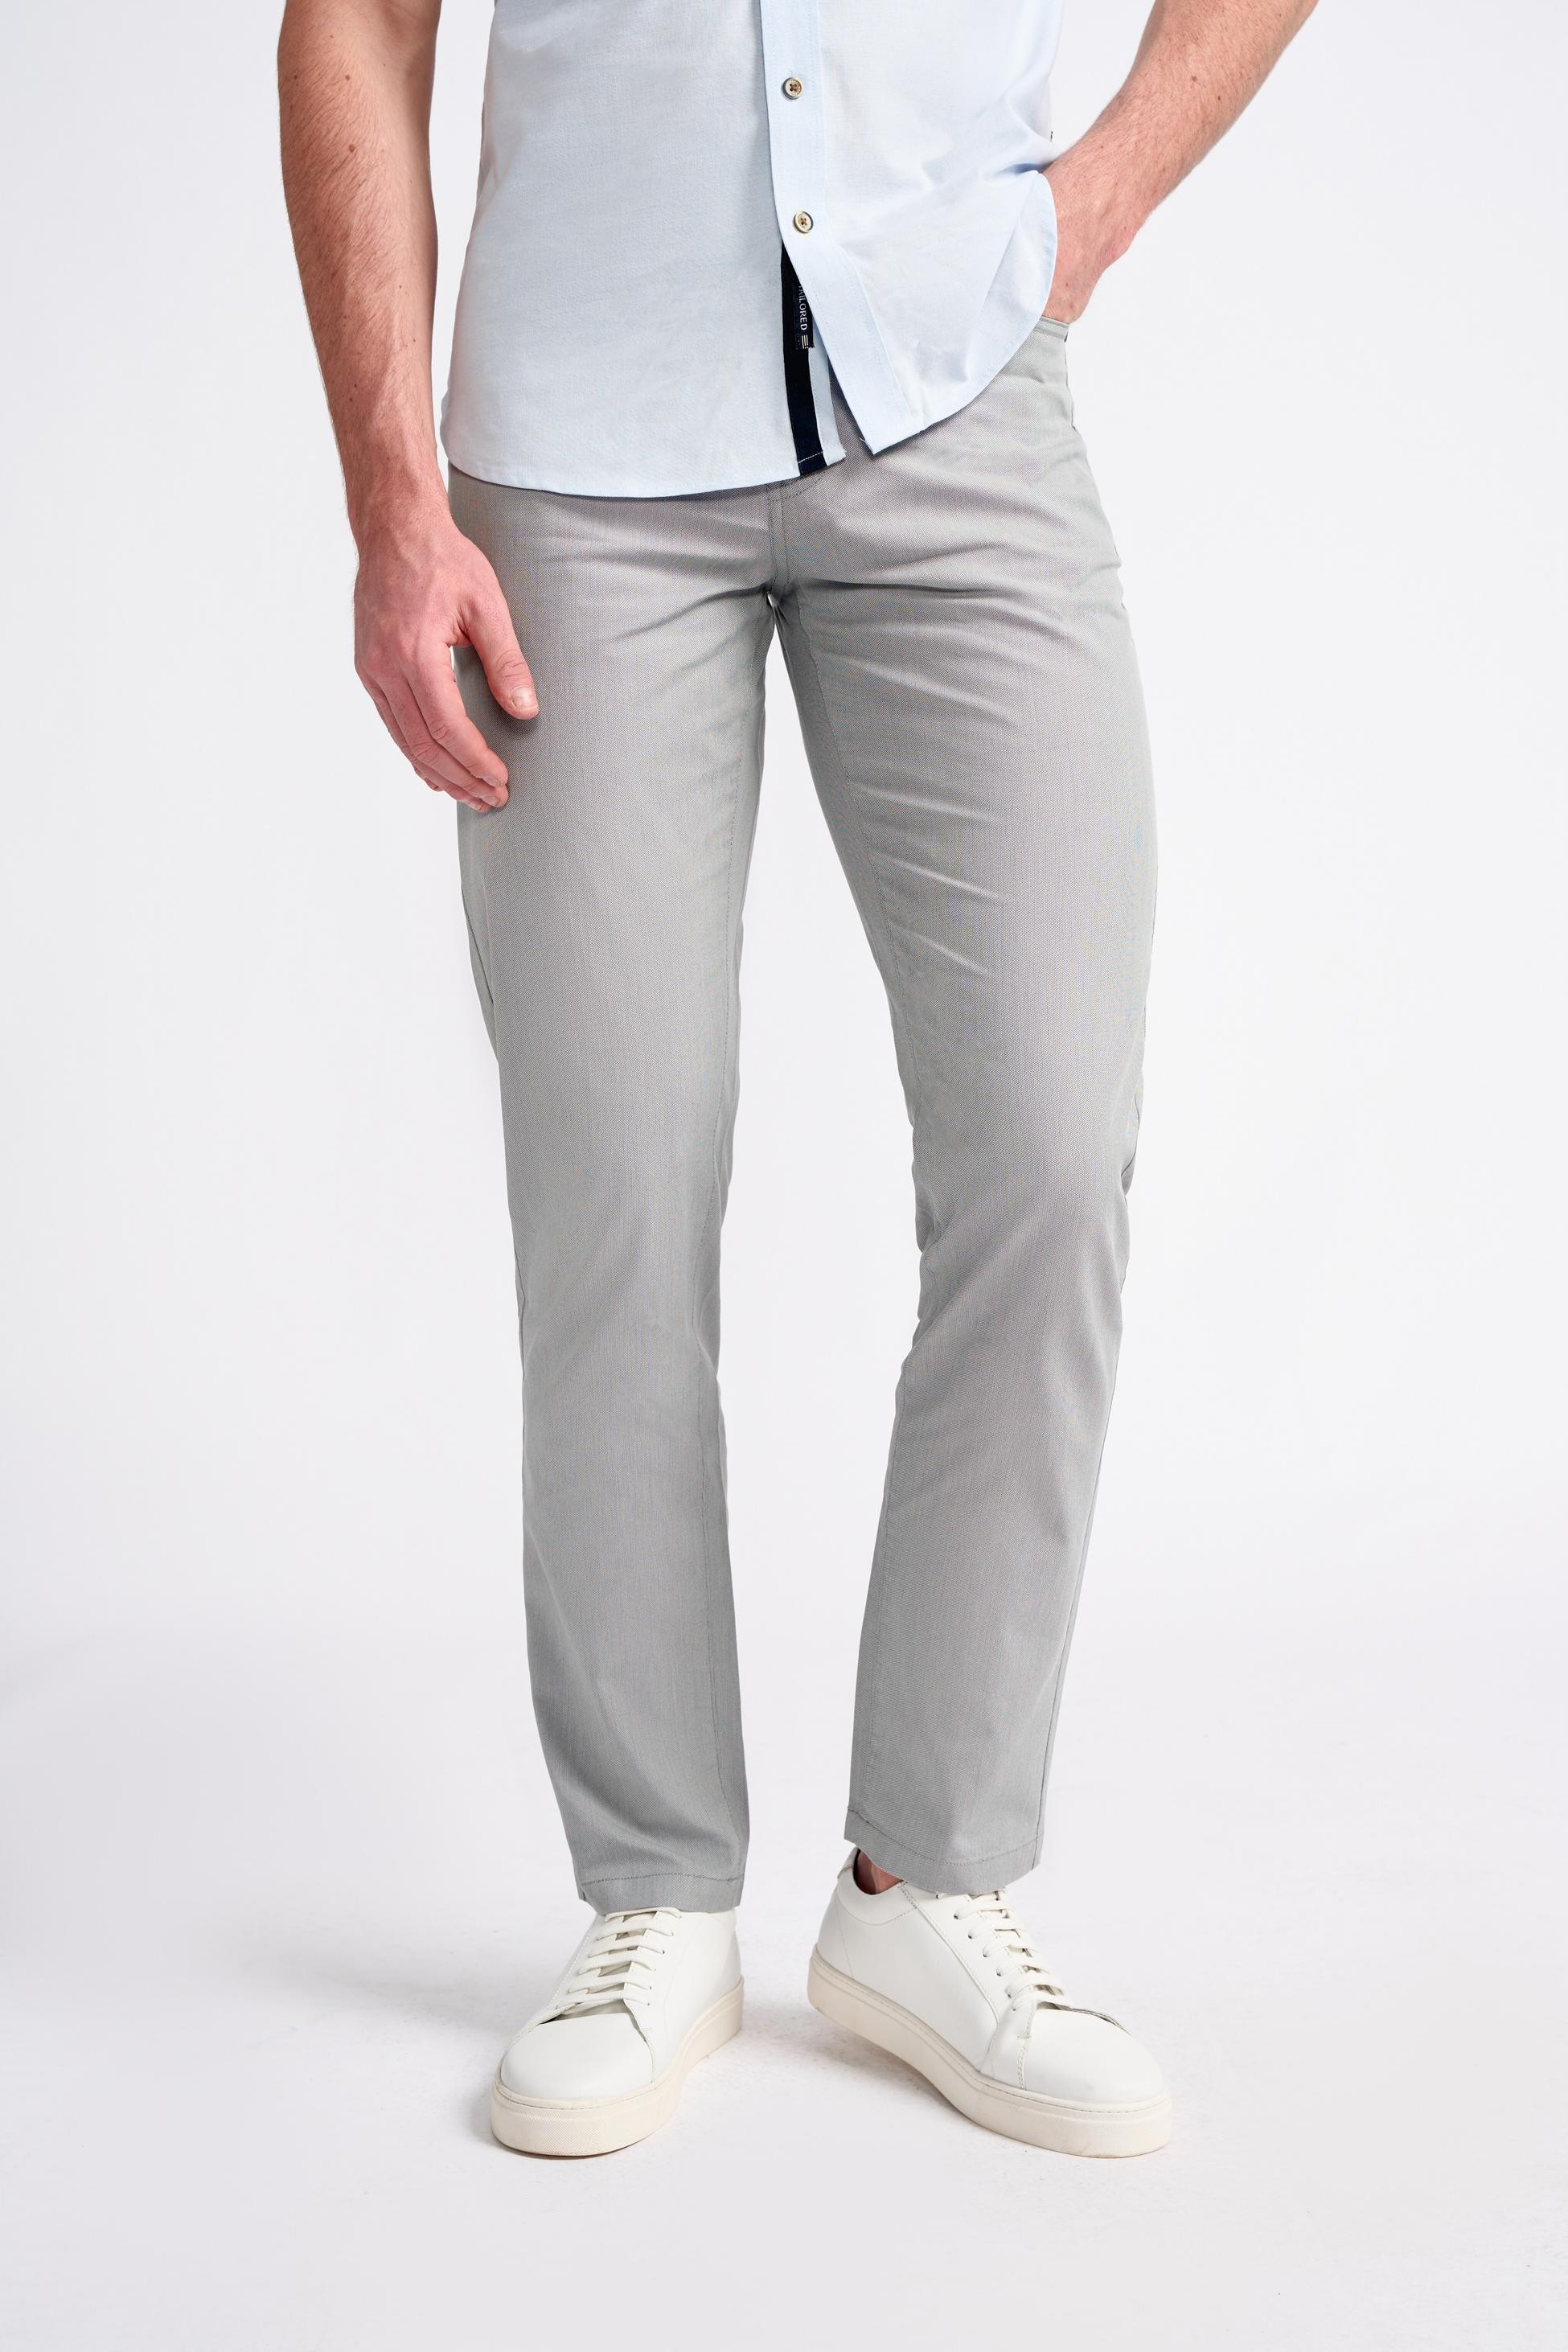 Men’s Cotton Blend Jean Cut Chino Pants  – DALTON - Grey